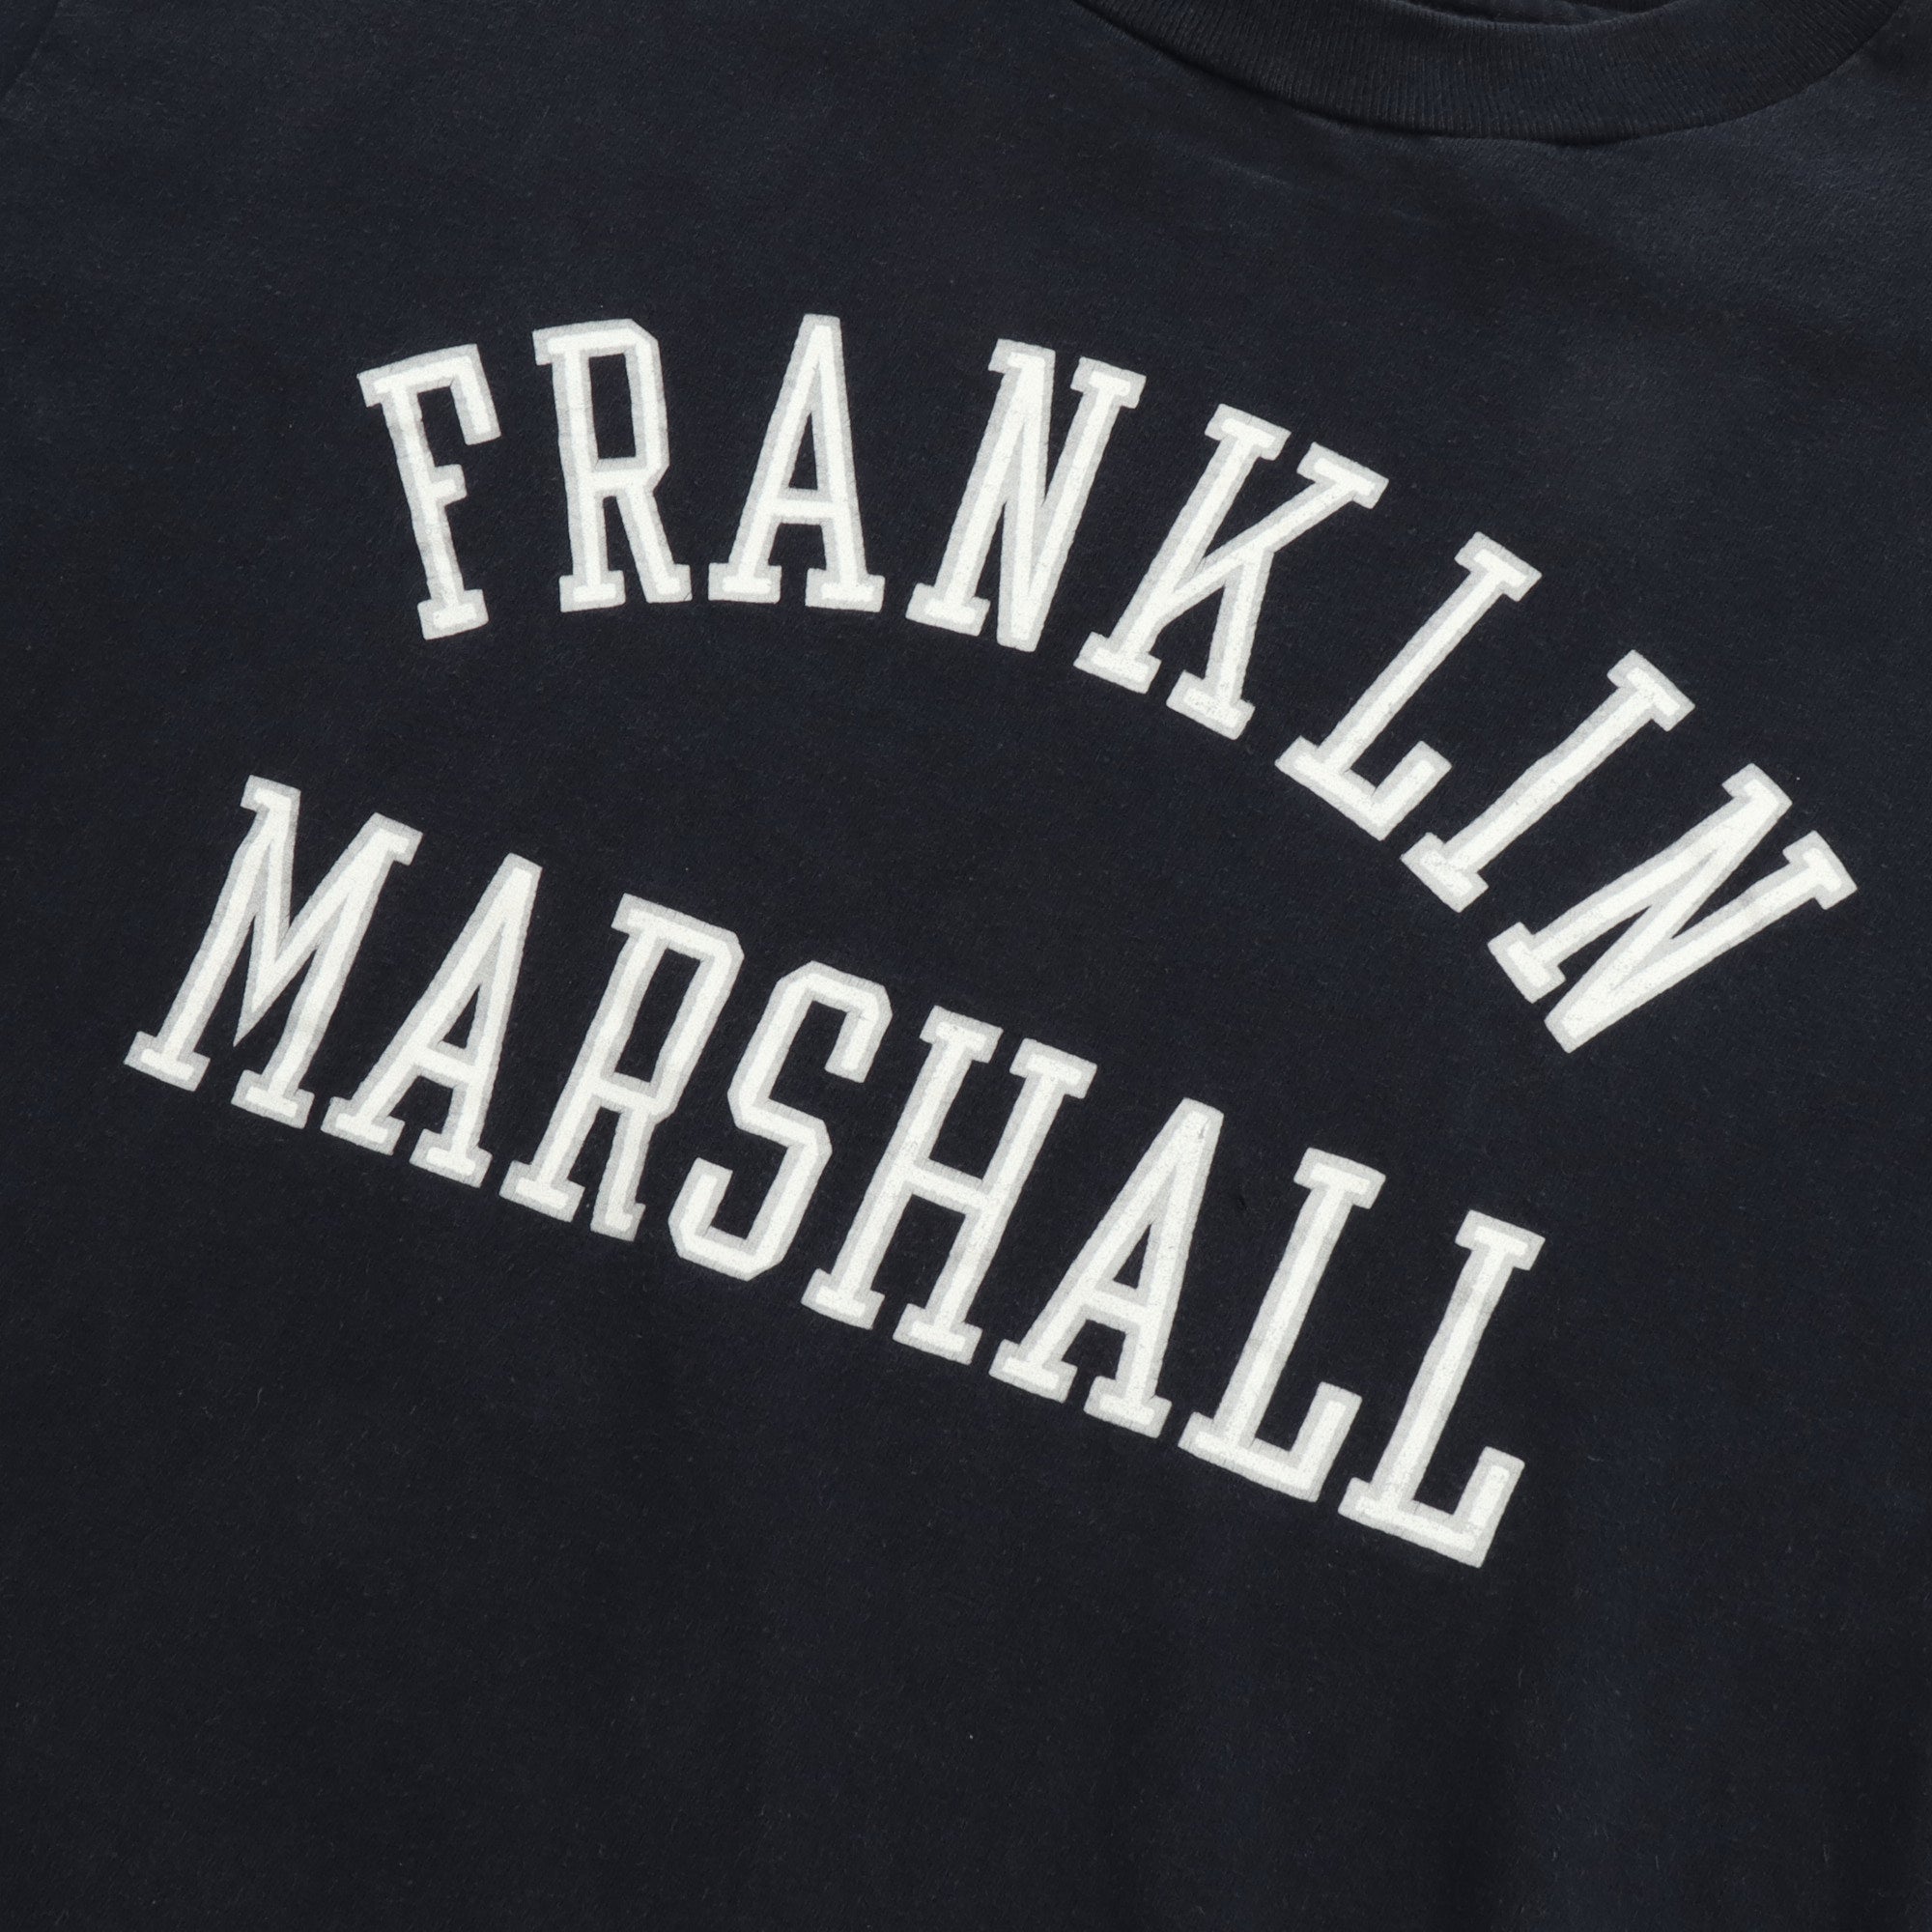 Vintage Franklin Marshall Tee